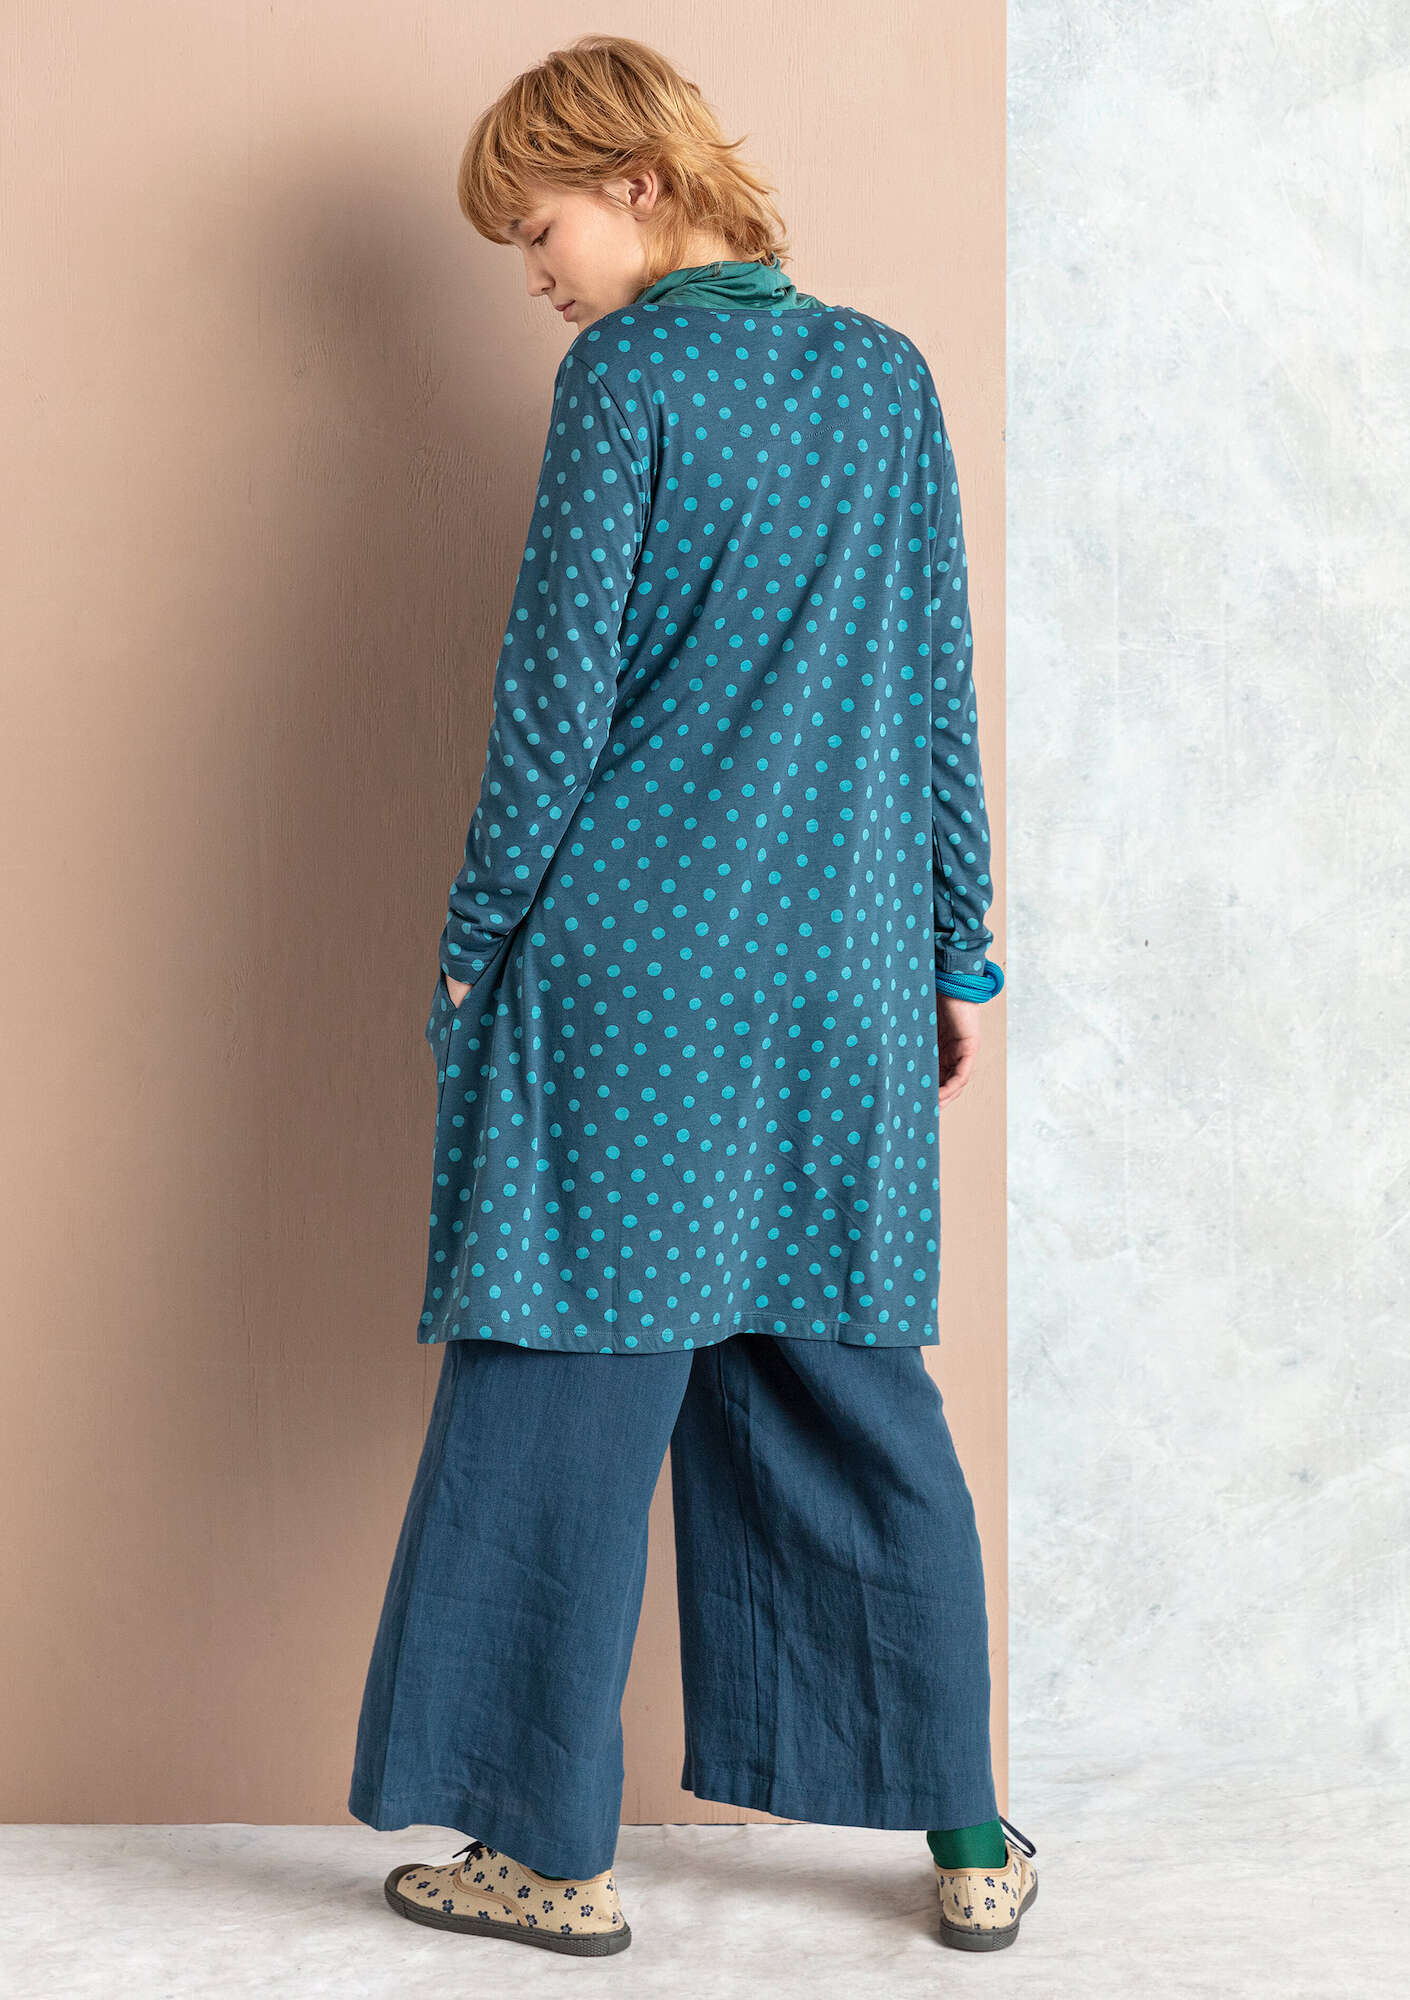 Juliet jersey tunic indigo/patterned